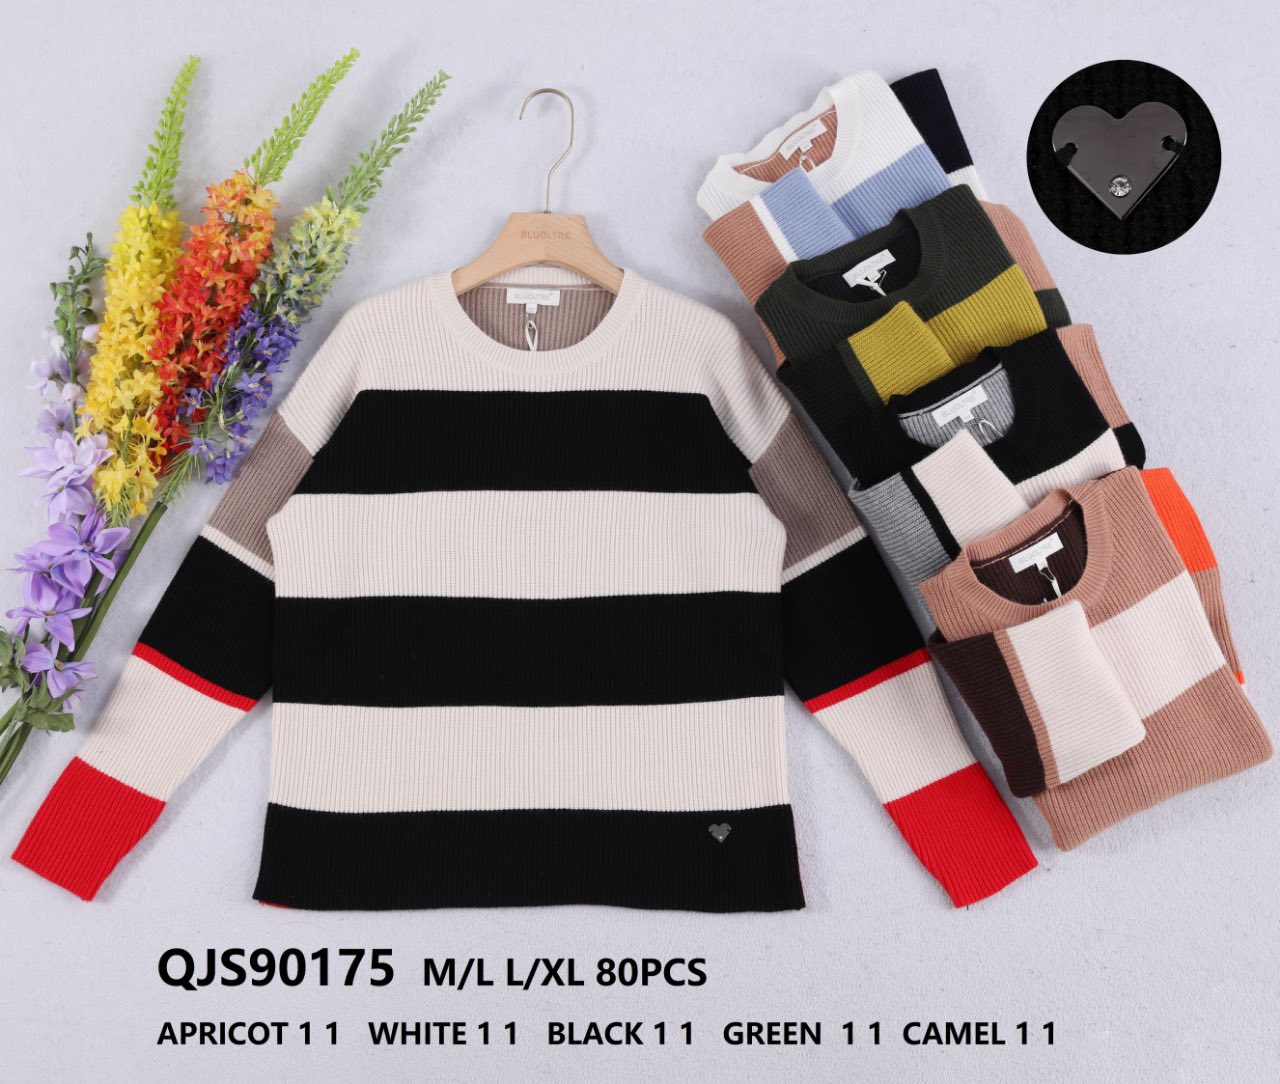 Swetry damska (Francja produkt) Roz M/L-L/XL Mix kolor. Paszka 10 szt